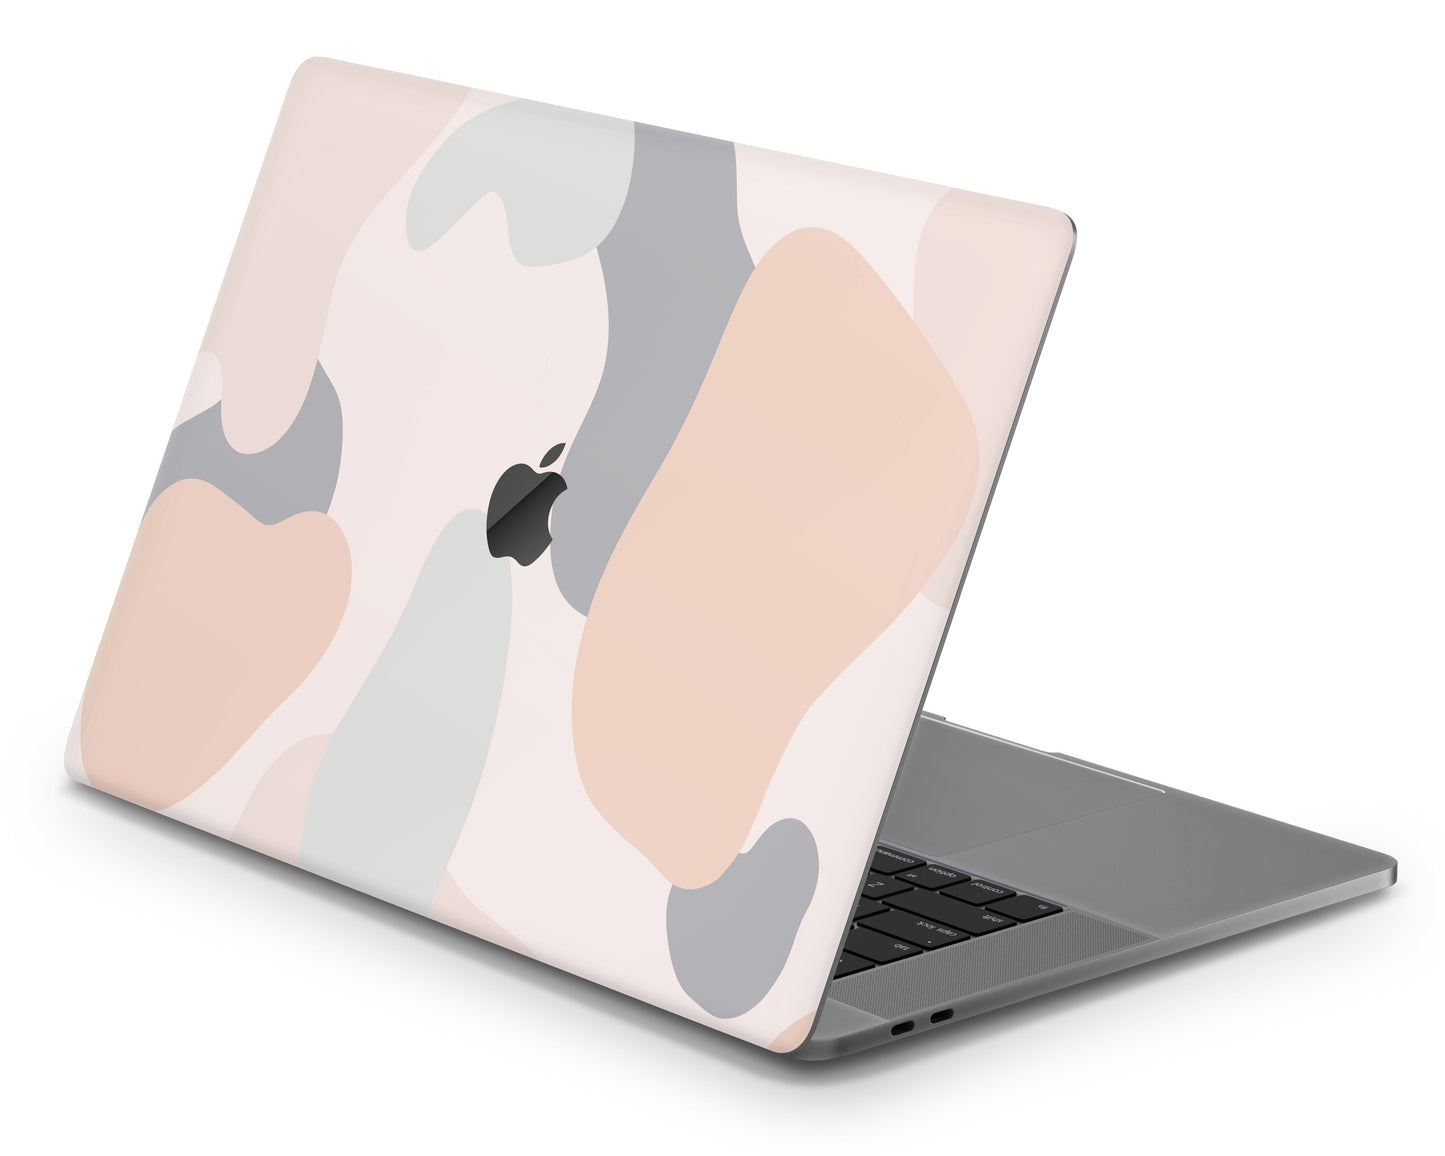 Lux Skins MacBook Pastel Camo Beige CrÃƒÆ’Ã†â€™Ãƒâ€ Ã¢â‚¬â„¢ÃƒÆ’Ã¢â‚¬Â ÃƒÂ¢Ã¢â€šÂ¬Ã¢â€žÂ¢ÃƒÆ’Ã¢â‚¬Å¡Ã‚Â¨me Pro 16" (A2141) Skins - Pattern Abstract Skin